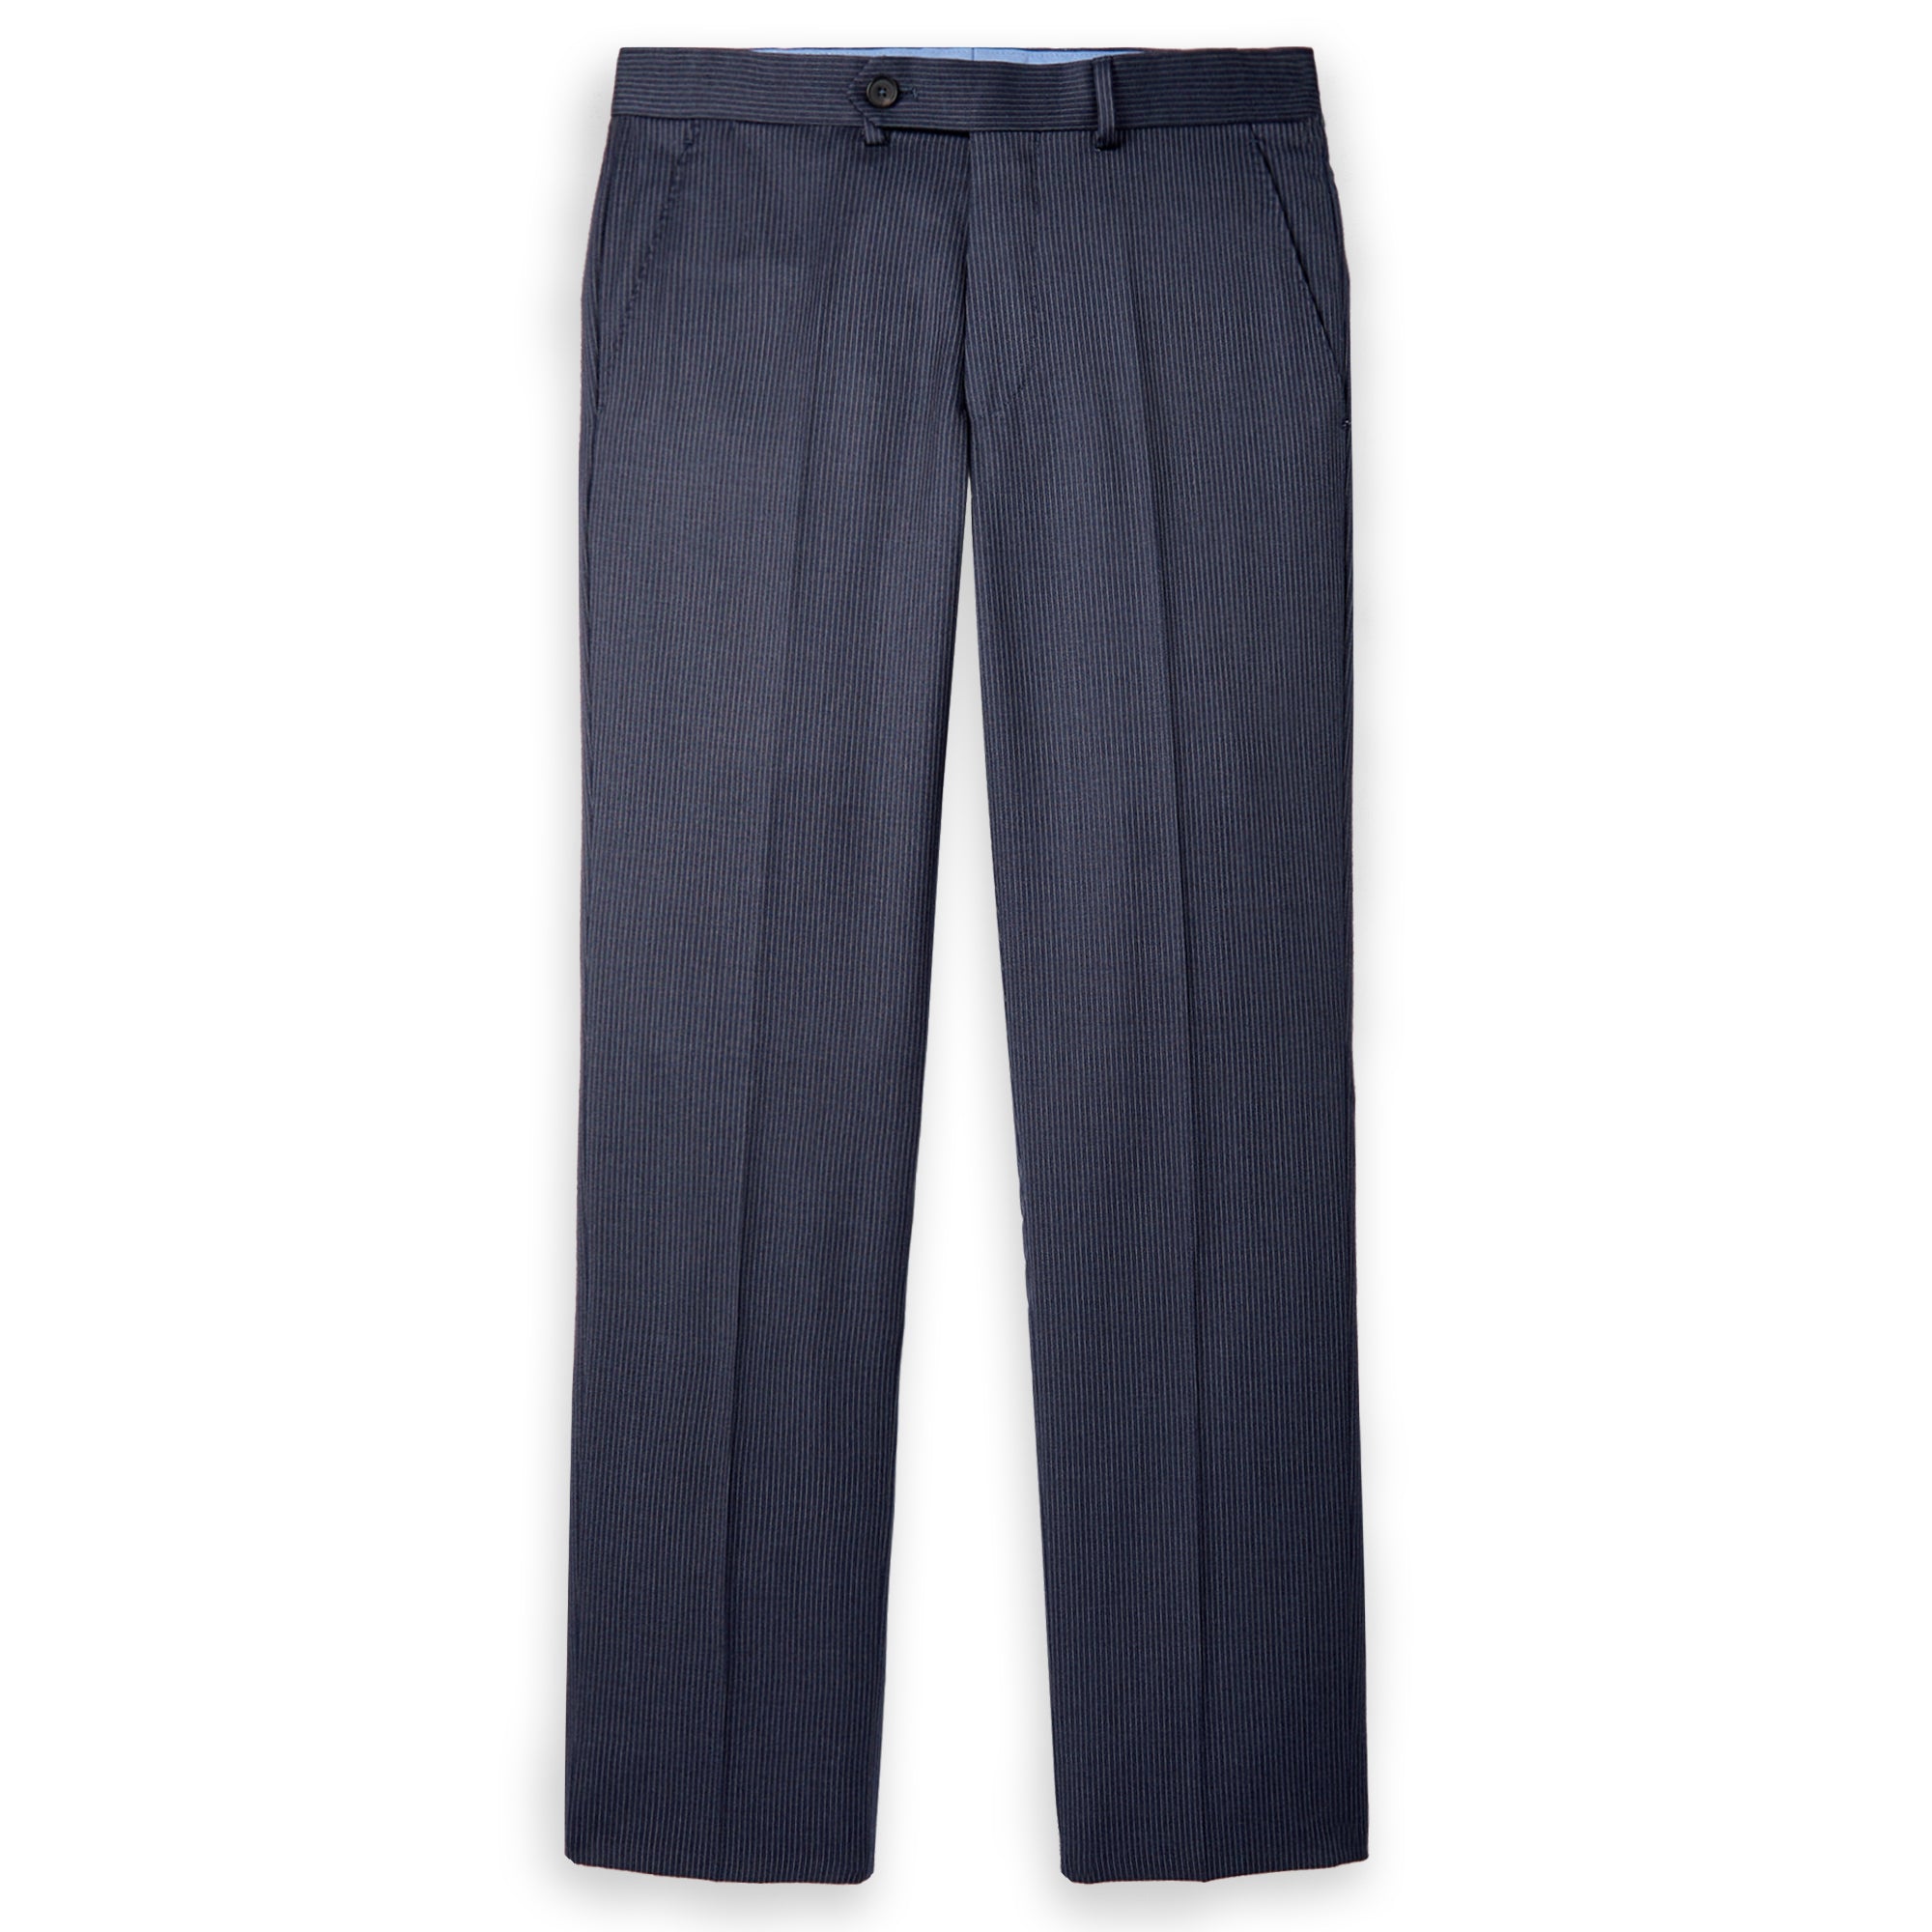 Essex Dress Pants - Navy Pinstripe